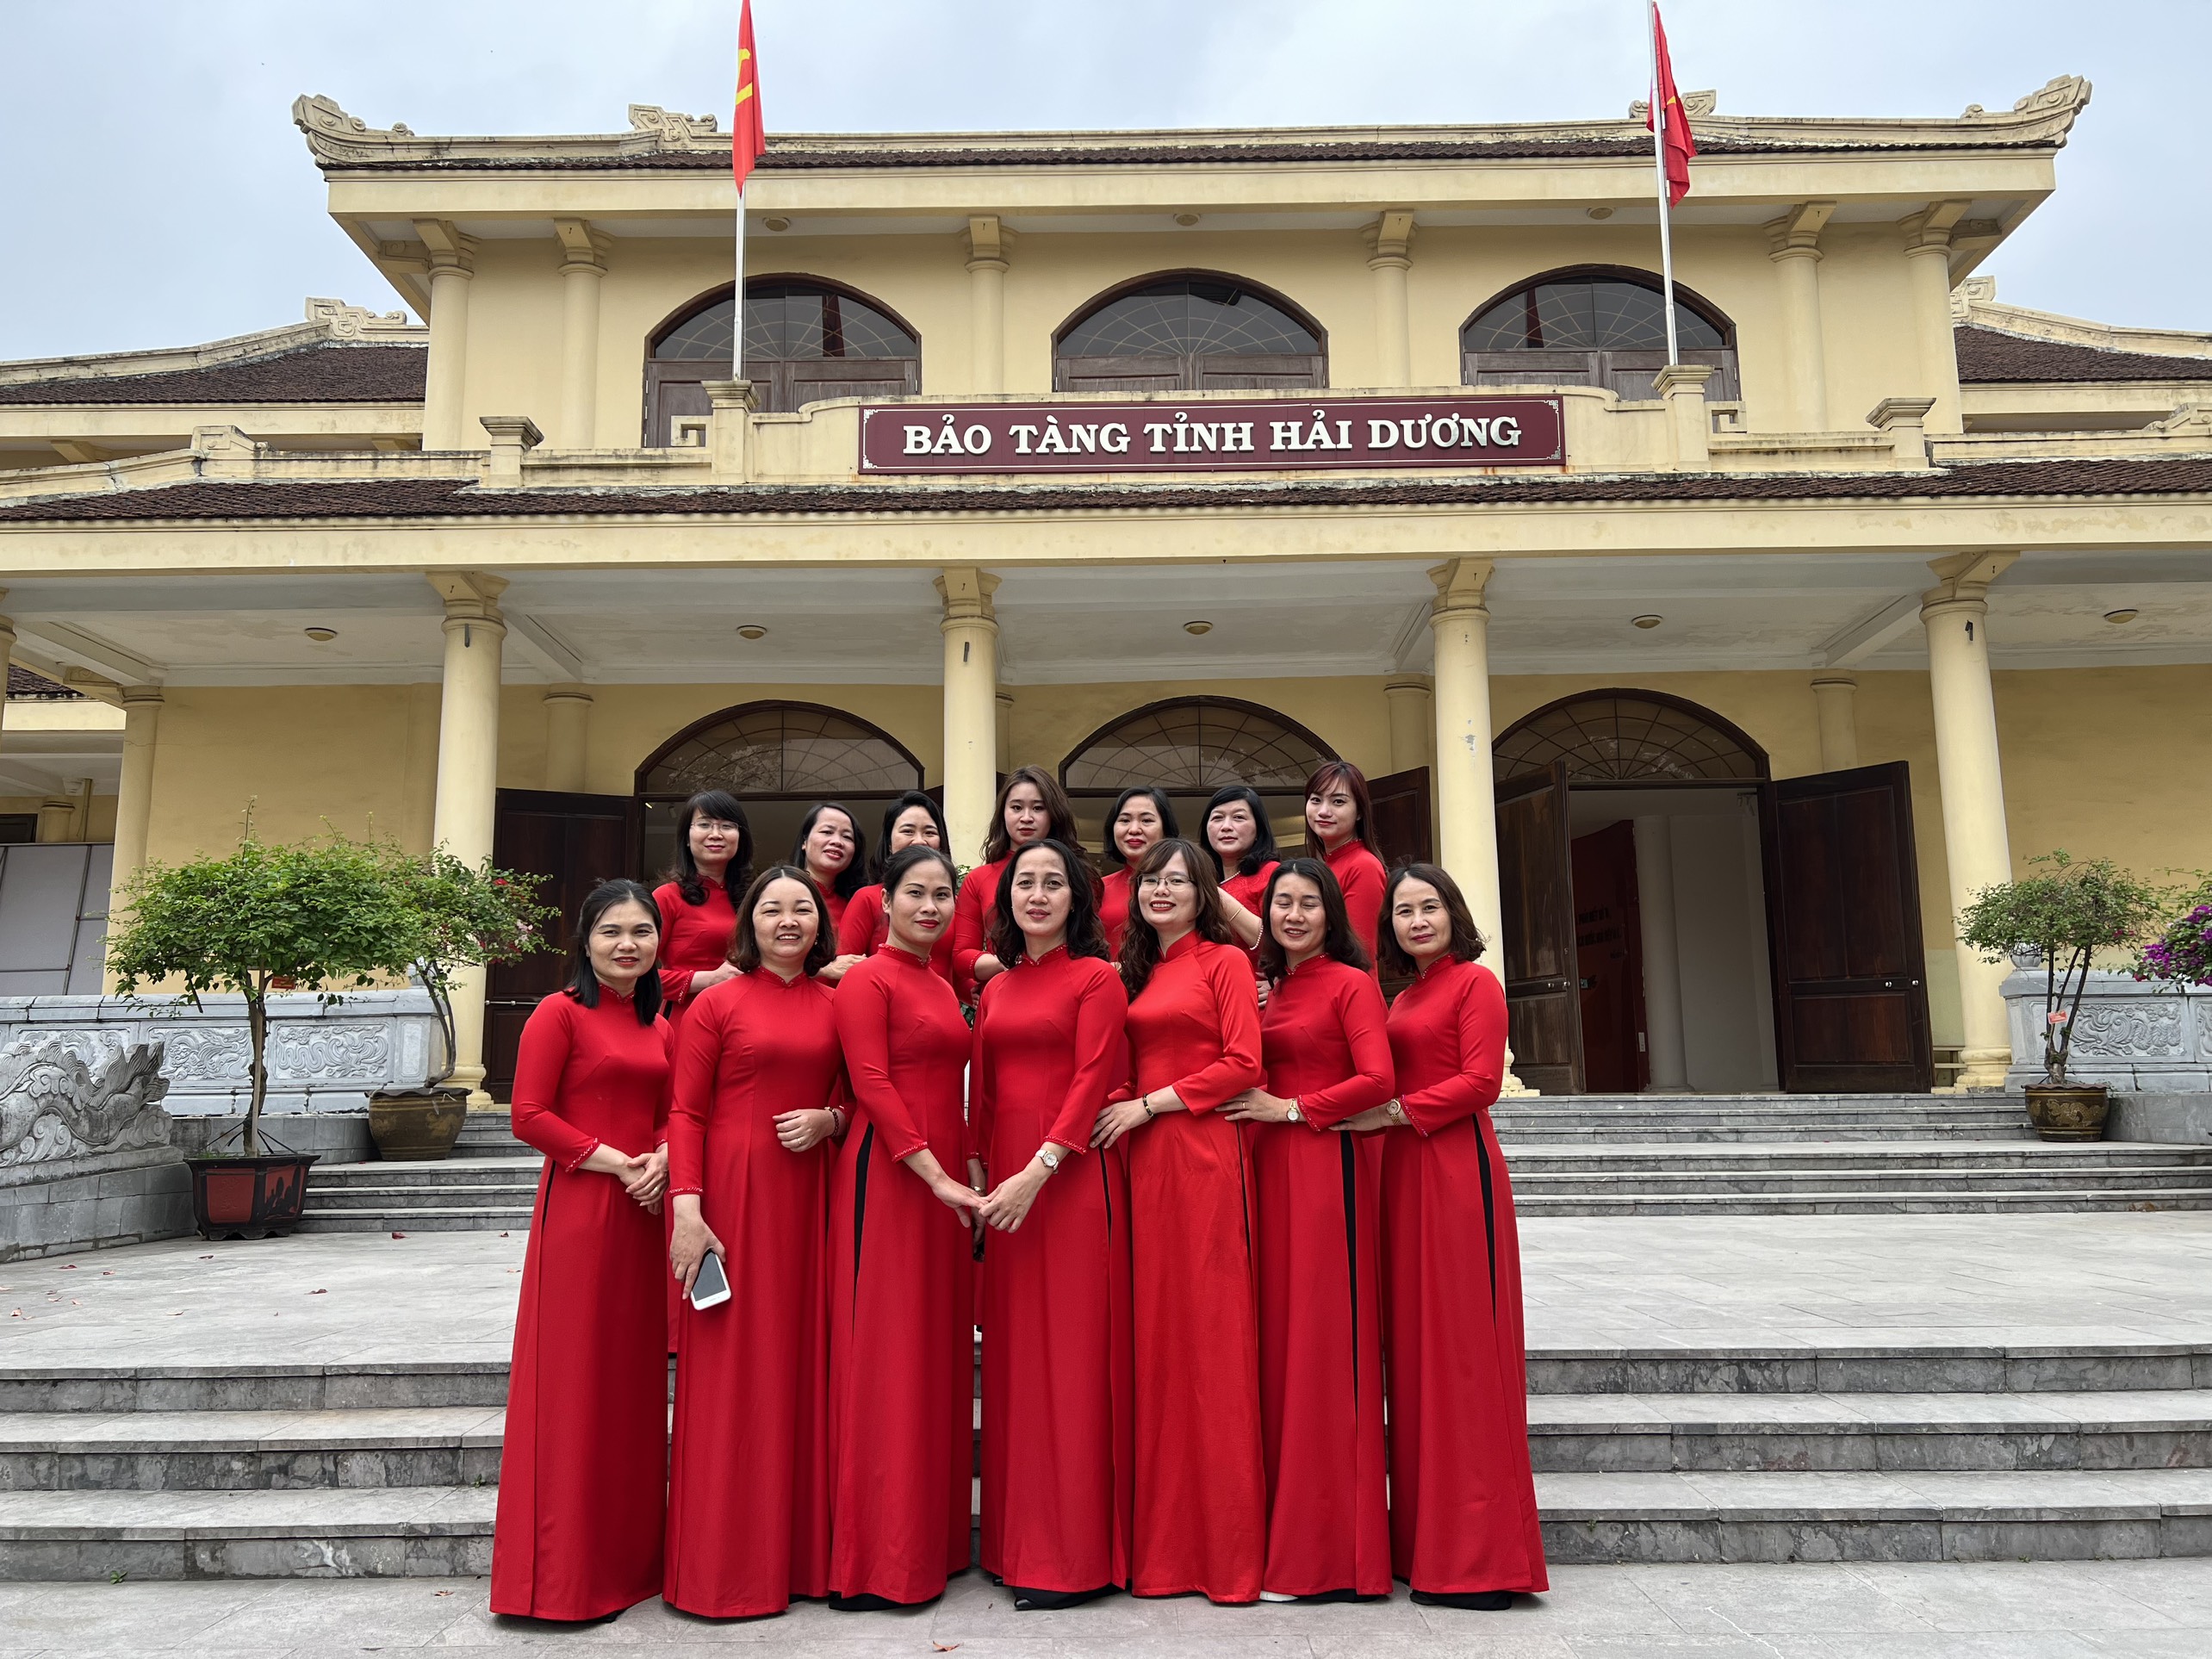 Cục THADS tỉnh đã tổ chức cho chị em phụ nữ đi thăm bảo tàng tỉnh Hải Dương Nhân dịp kỷ niệm 113 năm Ngày Quốc tế Phụ nữ 8/3